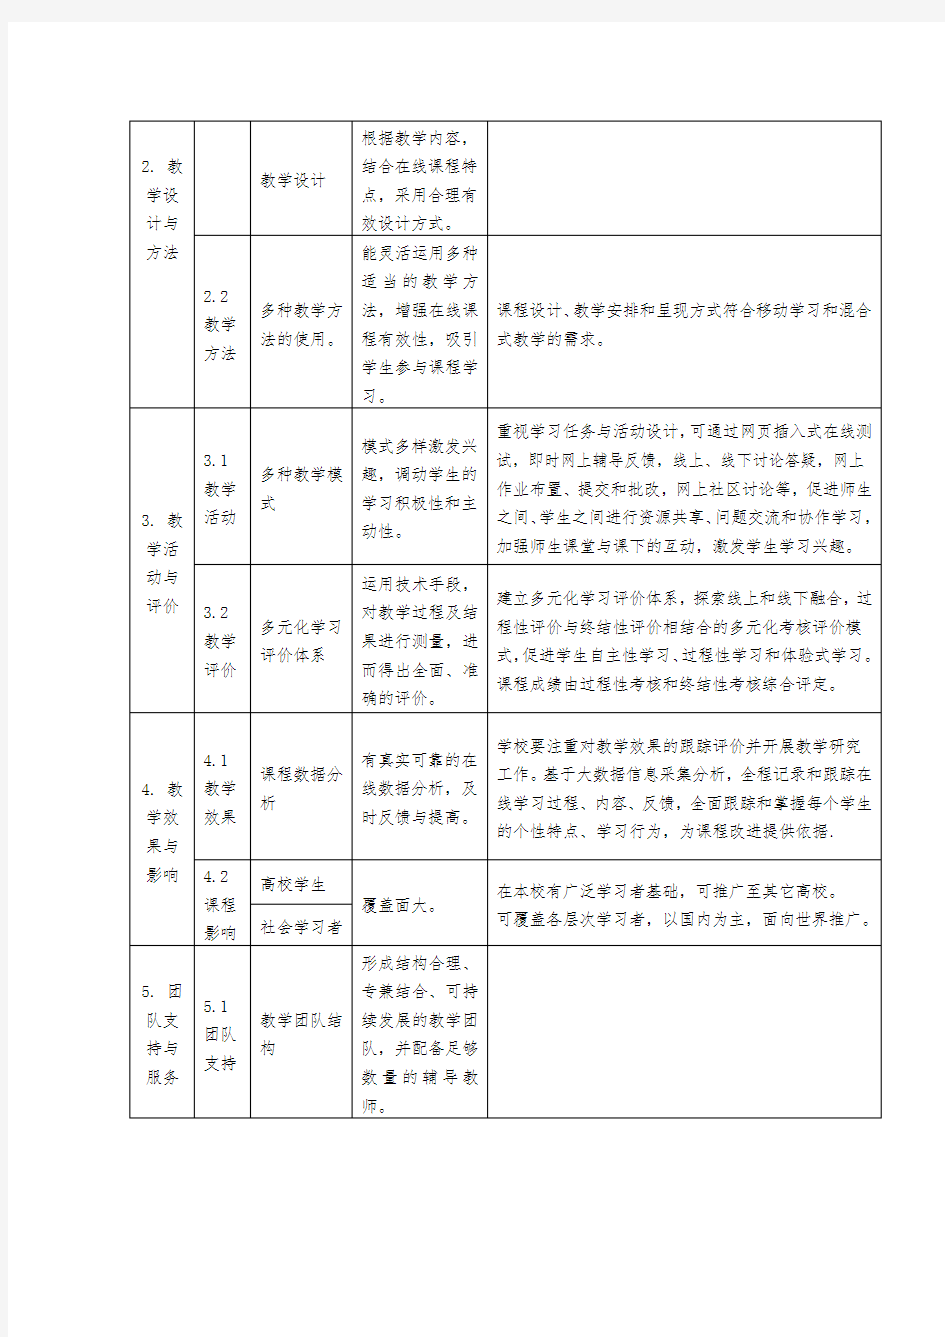 河北省高校精品在线开放课程建设与评价标准(试行)